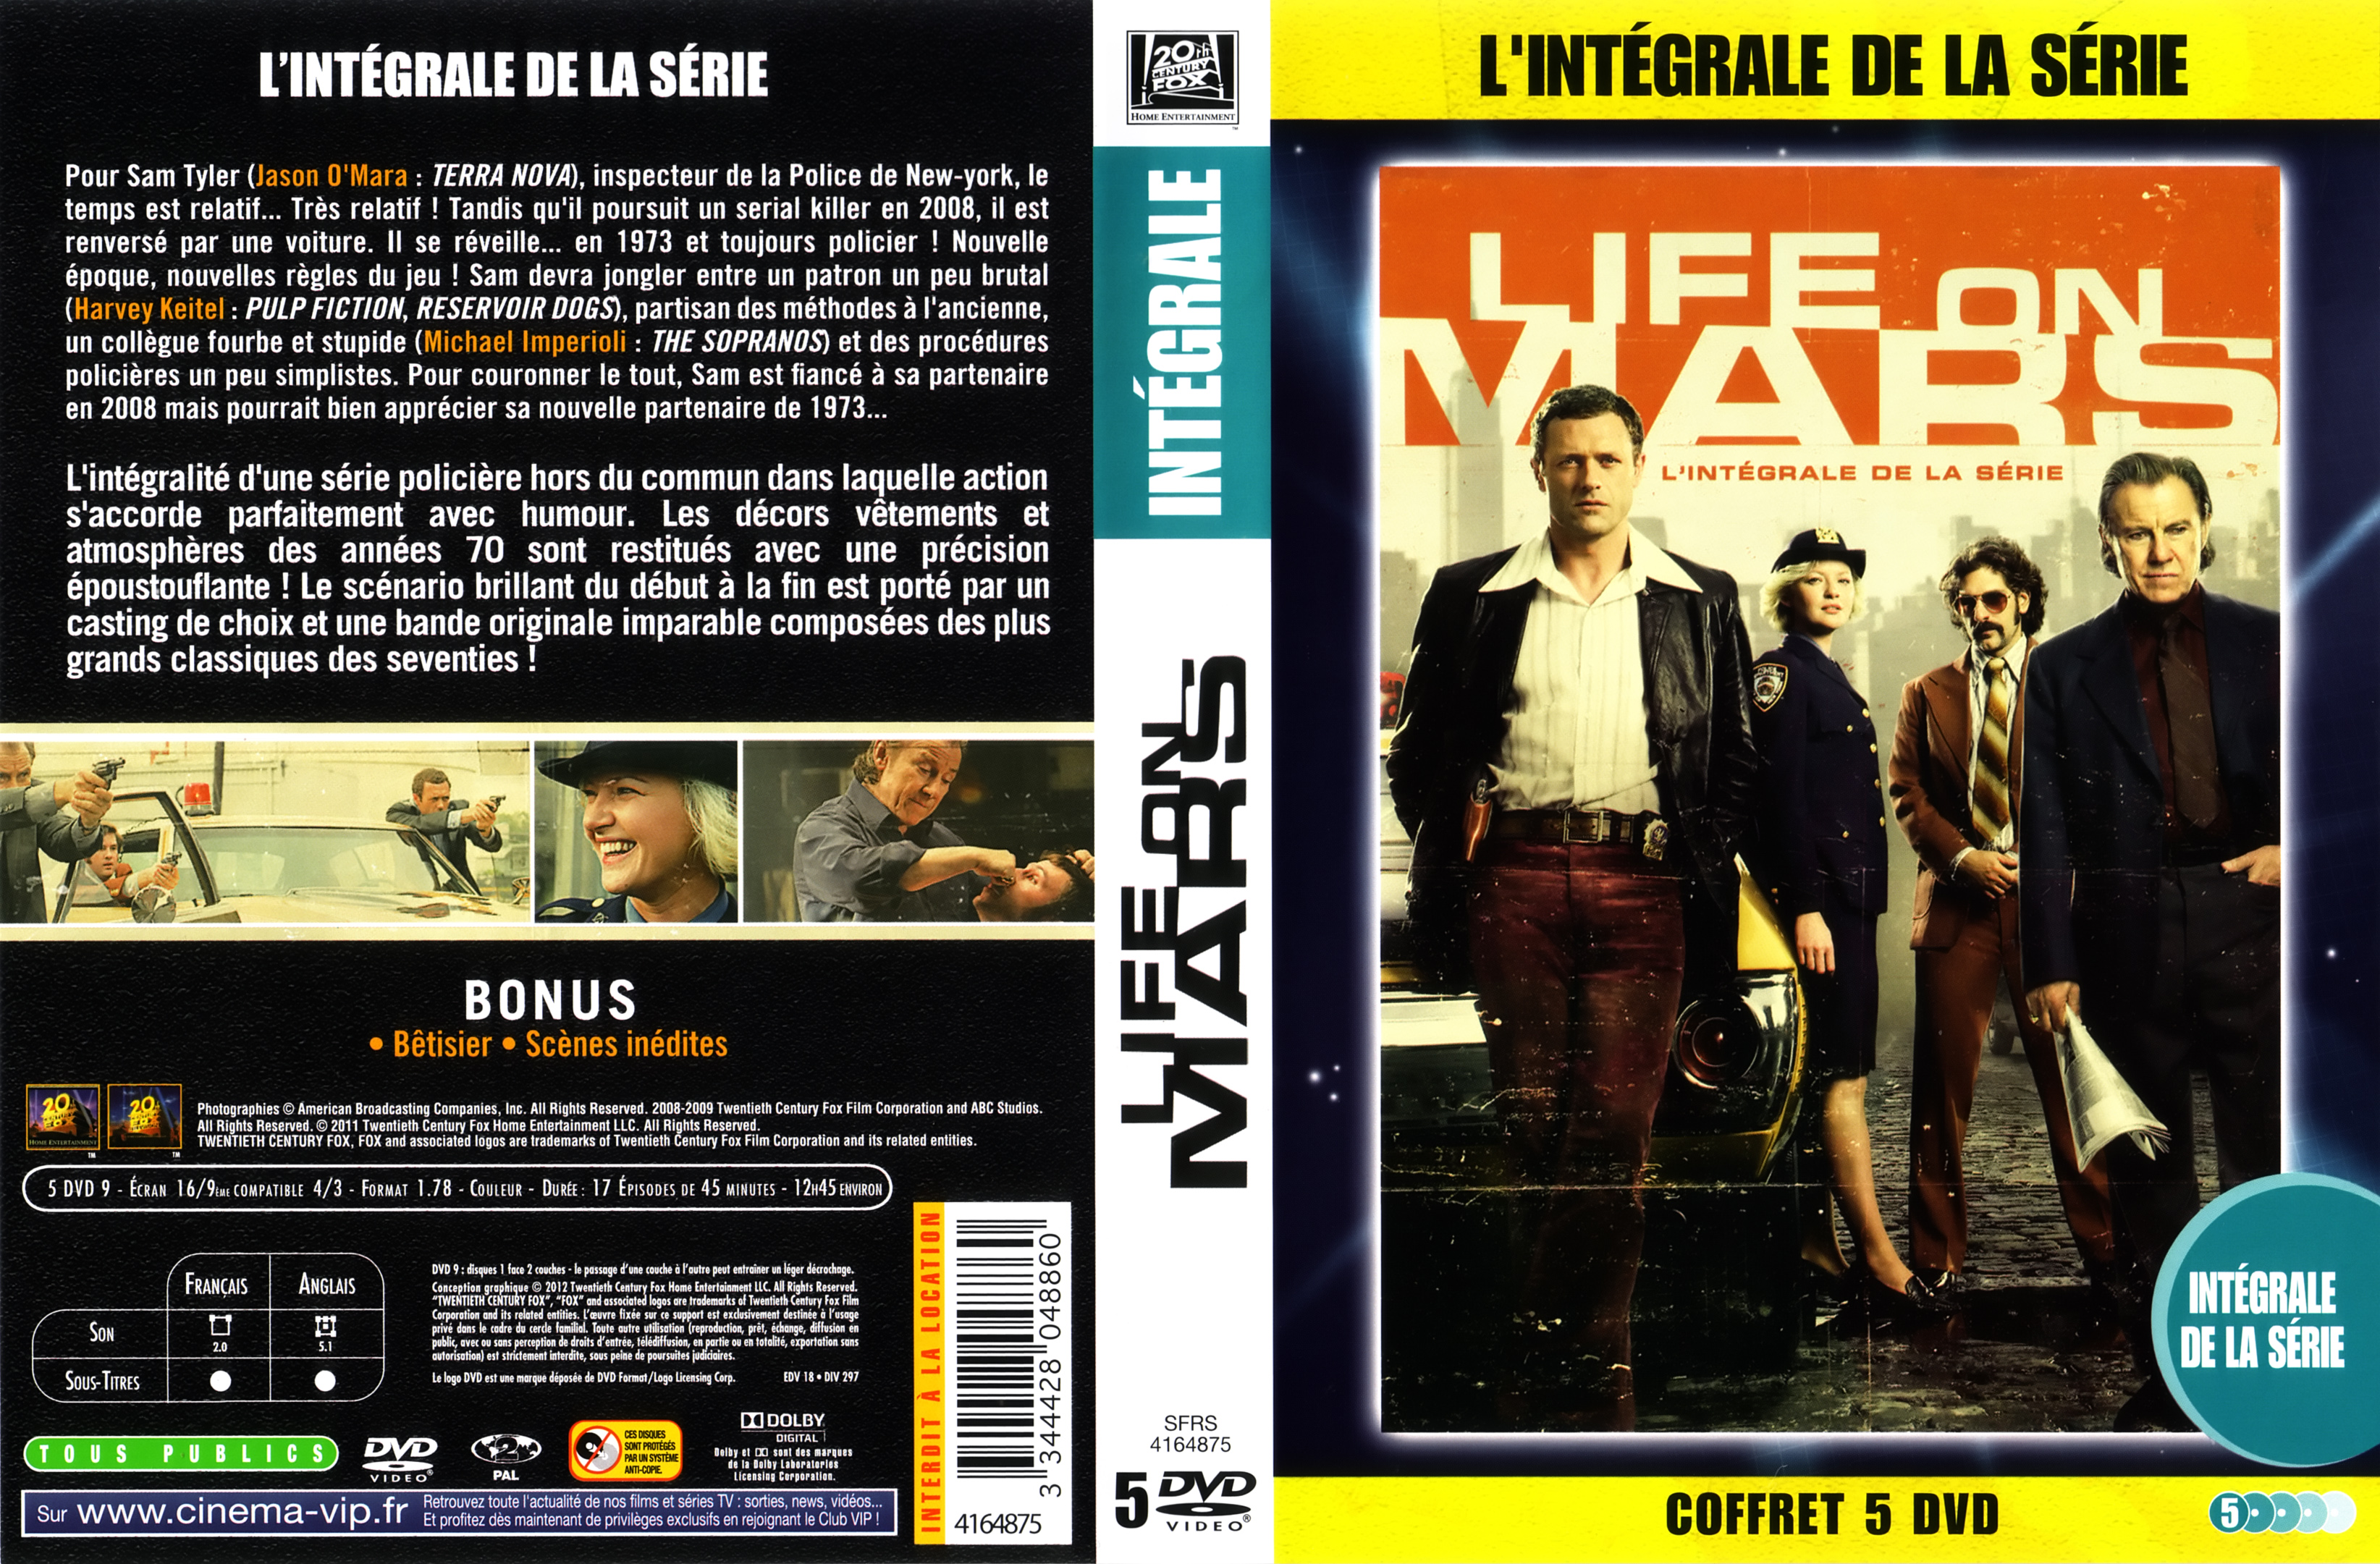 Jaquette DVD Life on mars Saison 1 US COFFRET